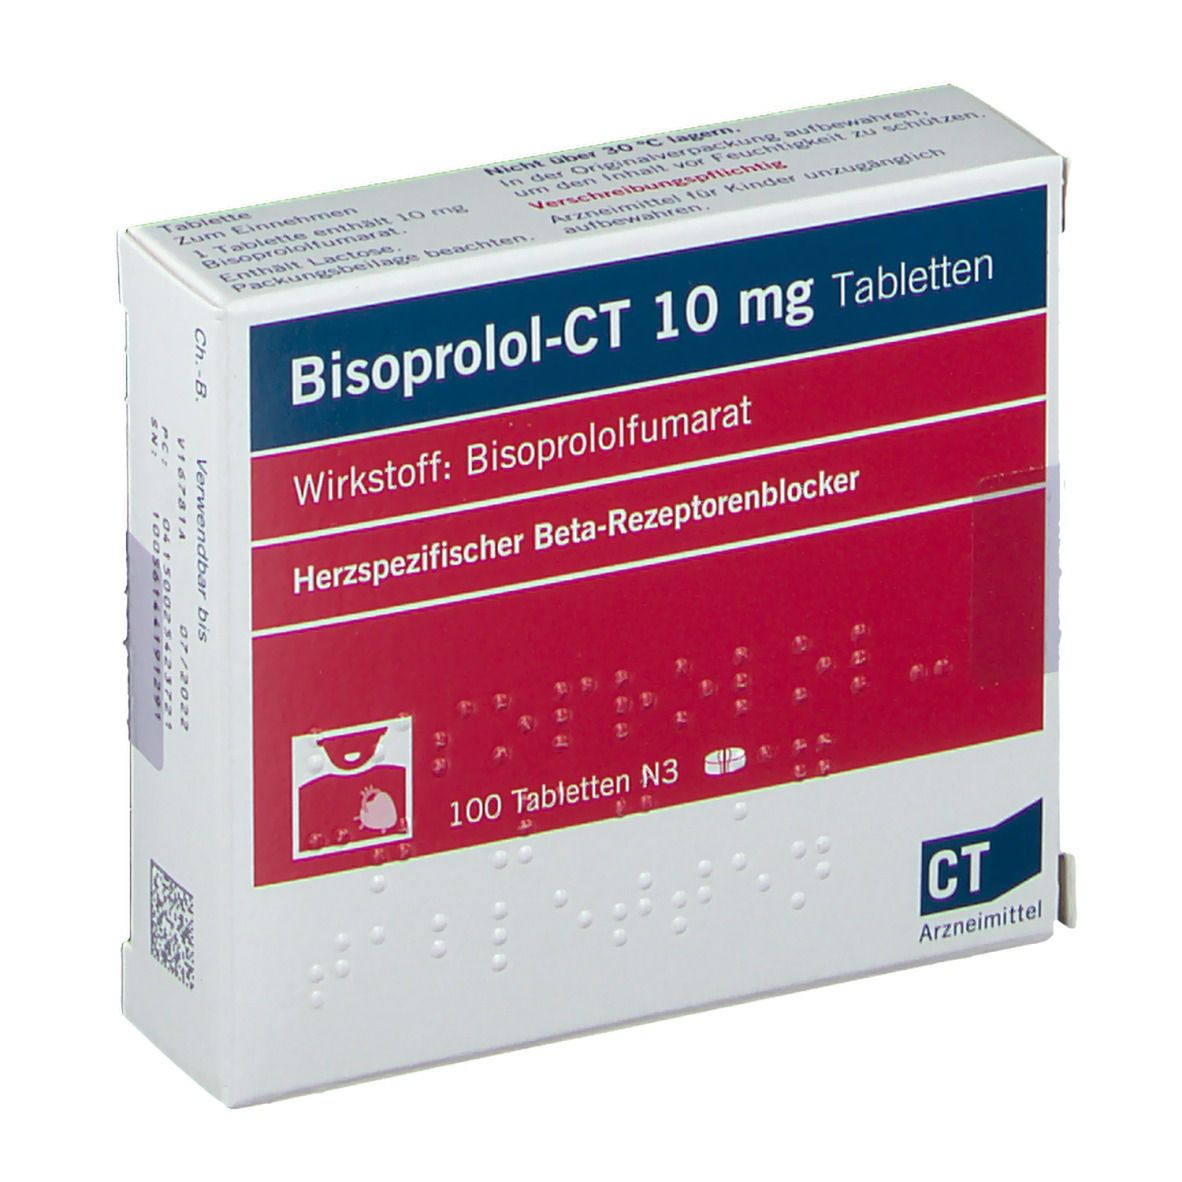 Bisoprolol - Ct 10 Mg l